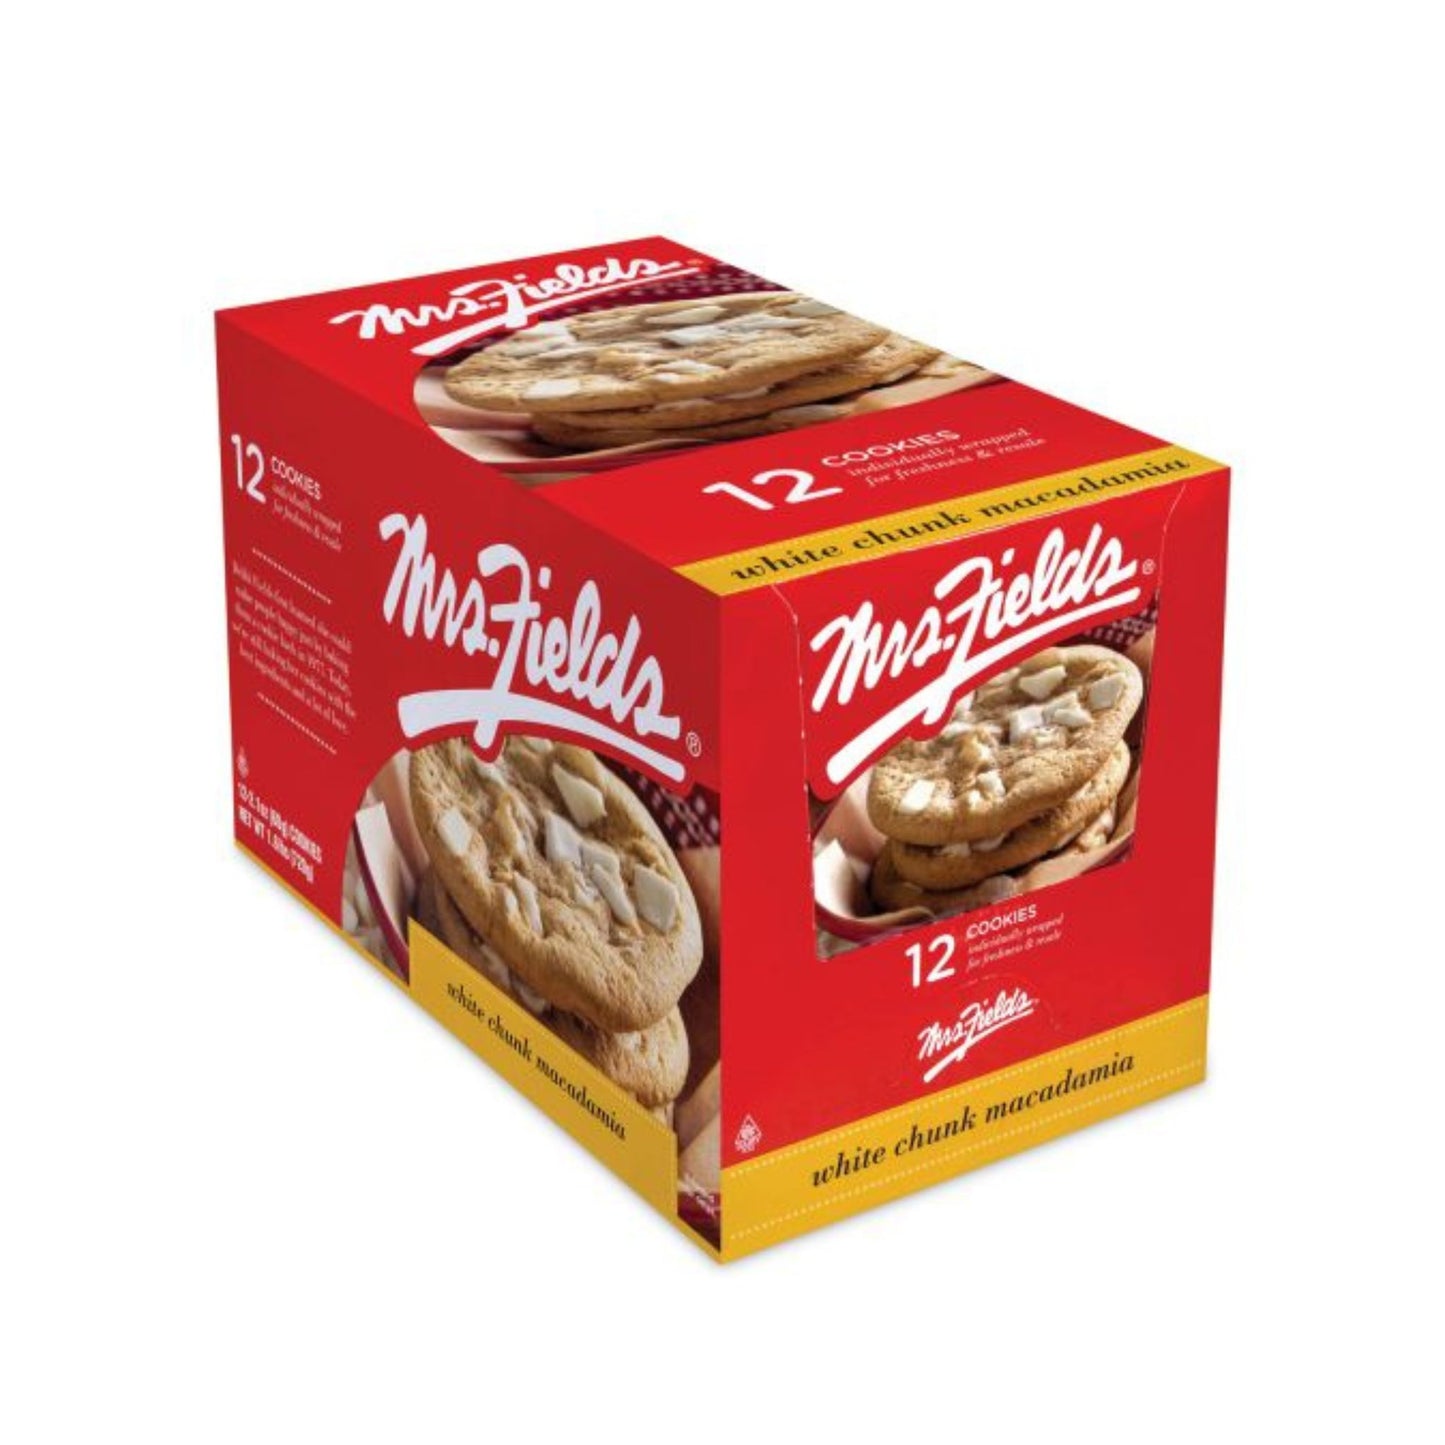 Mrs. Fields White Chunk Macadamia Cookies (Box Of 12)